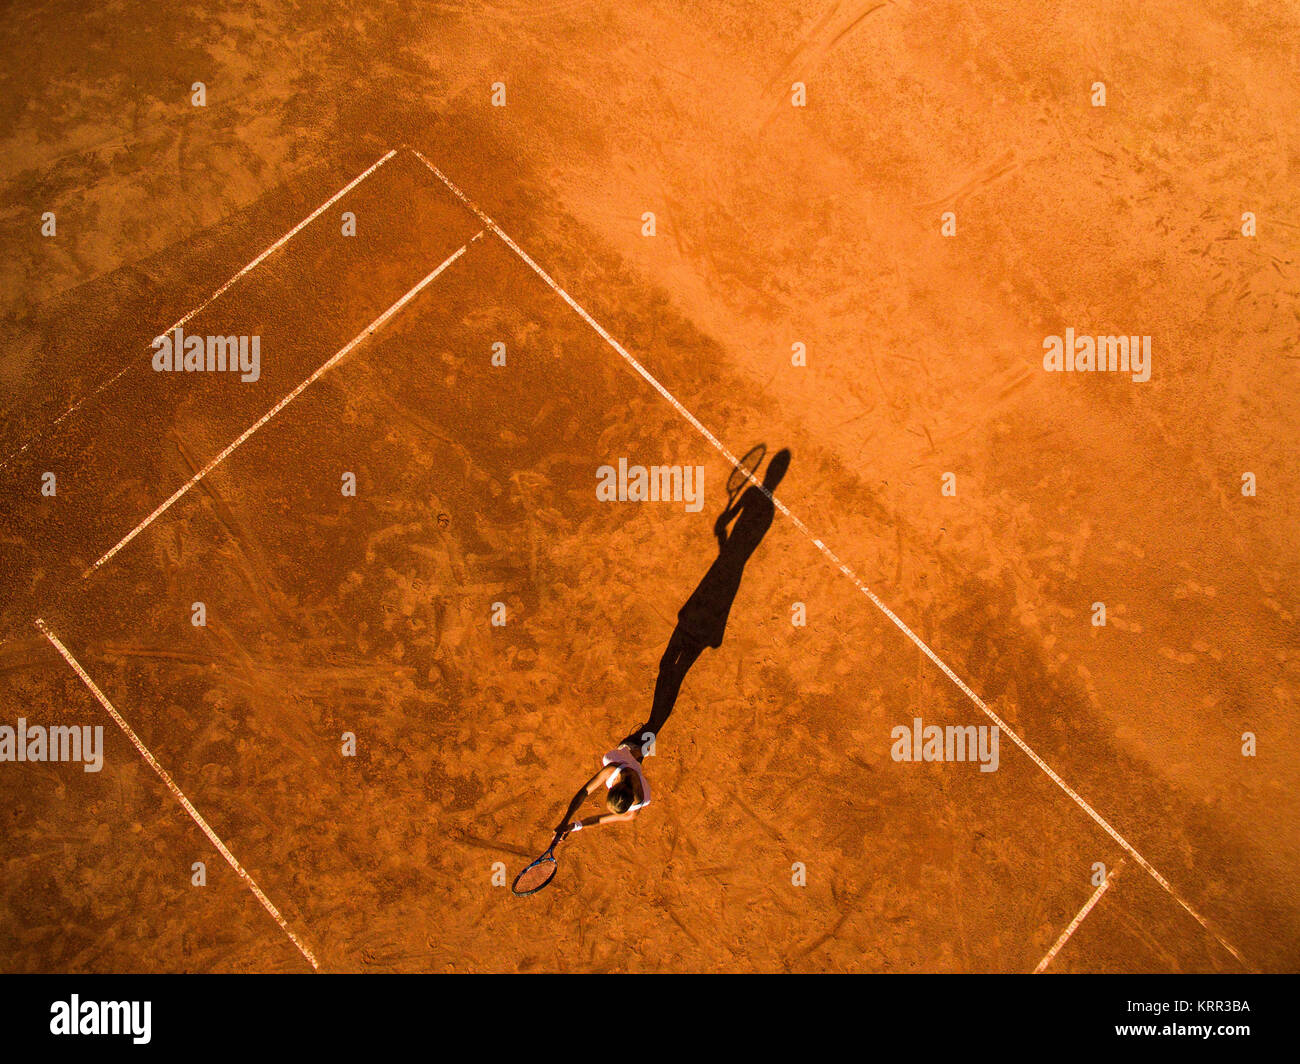 Vue aérienne d'un joueur de tennis féminin sur une cour au cours de match Banque D'Images